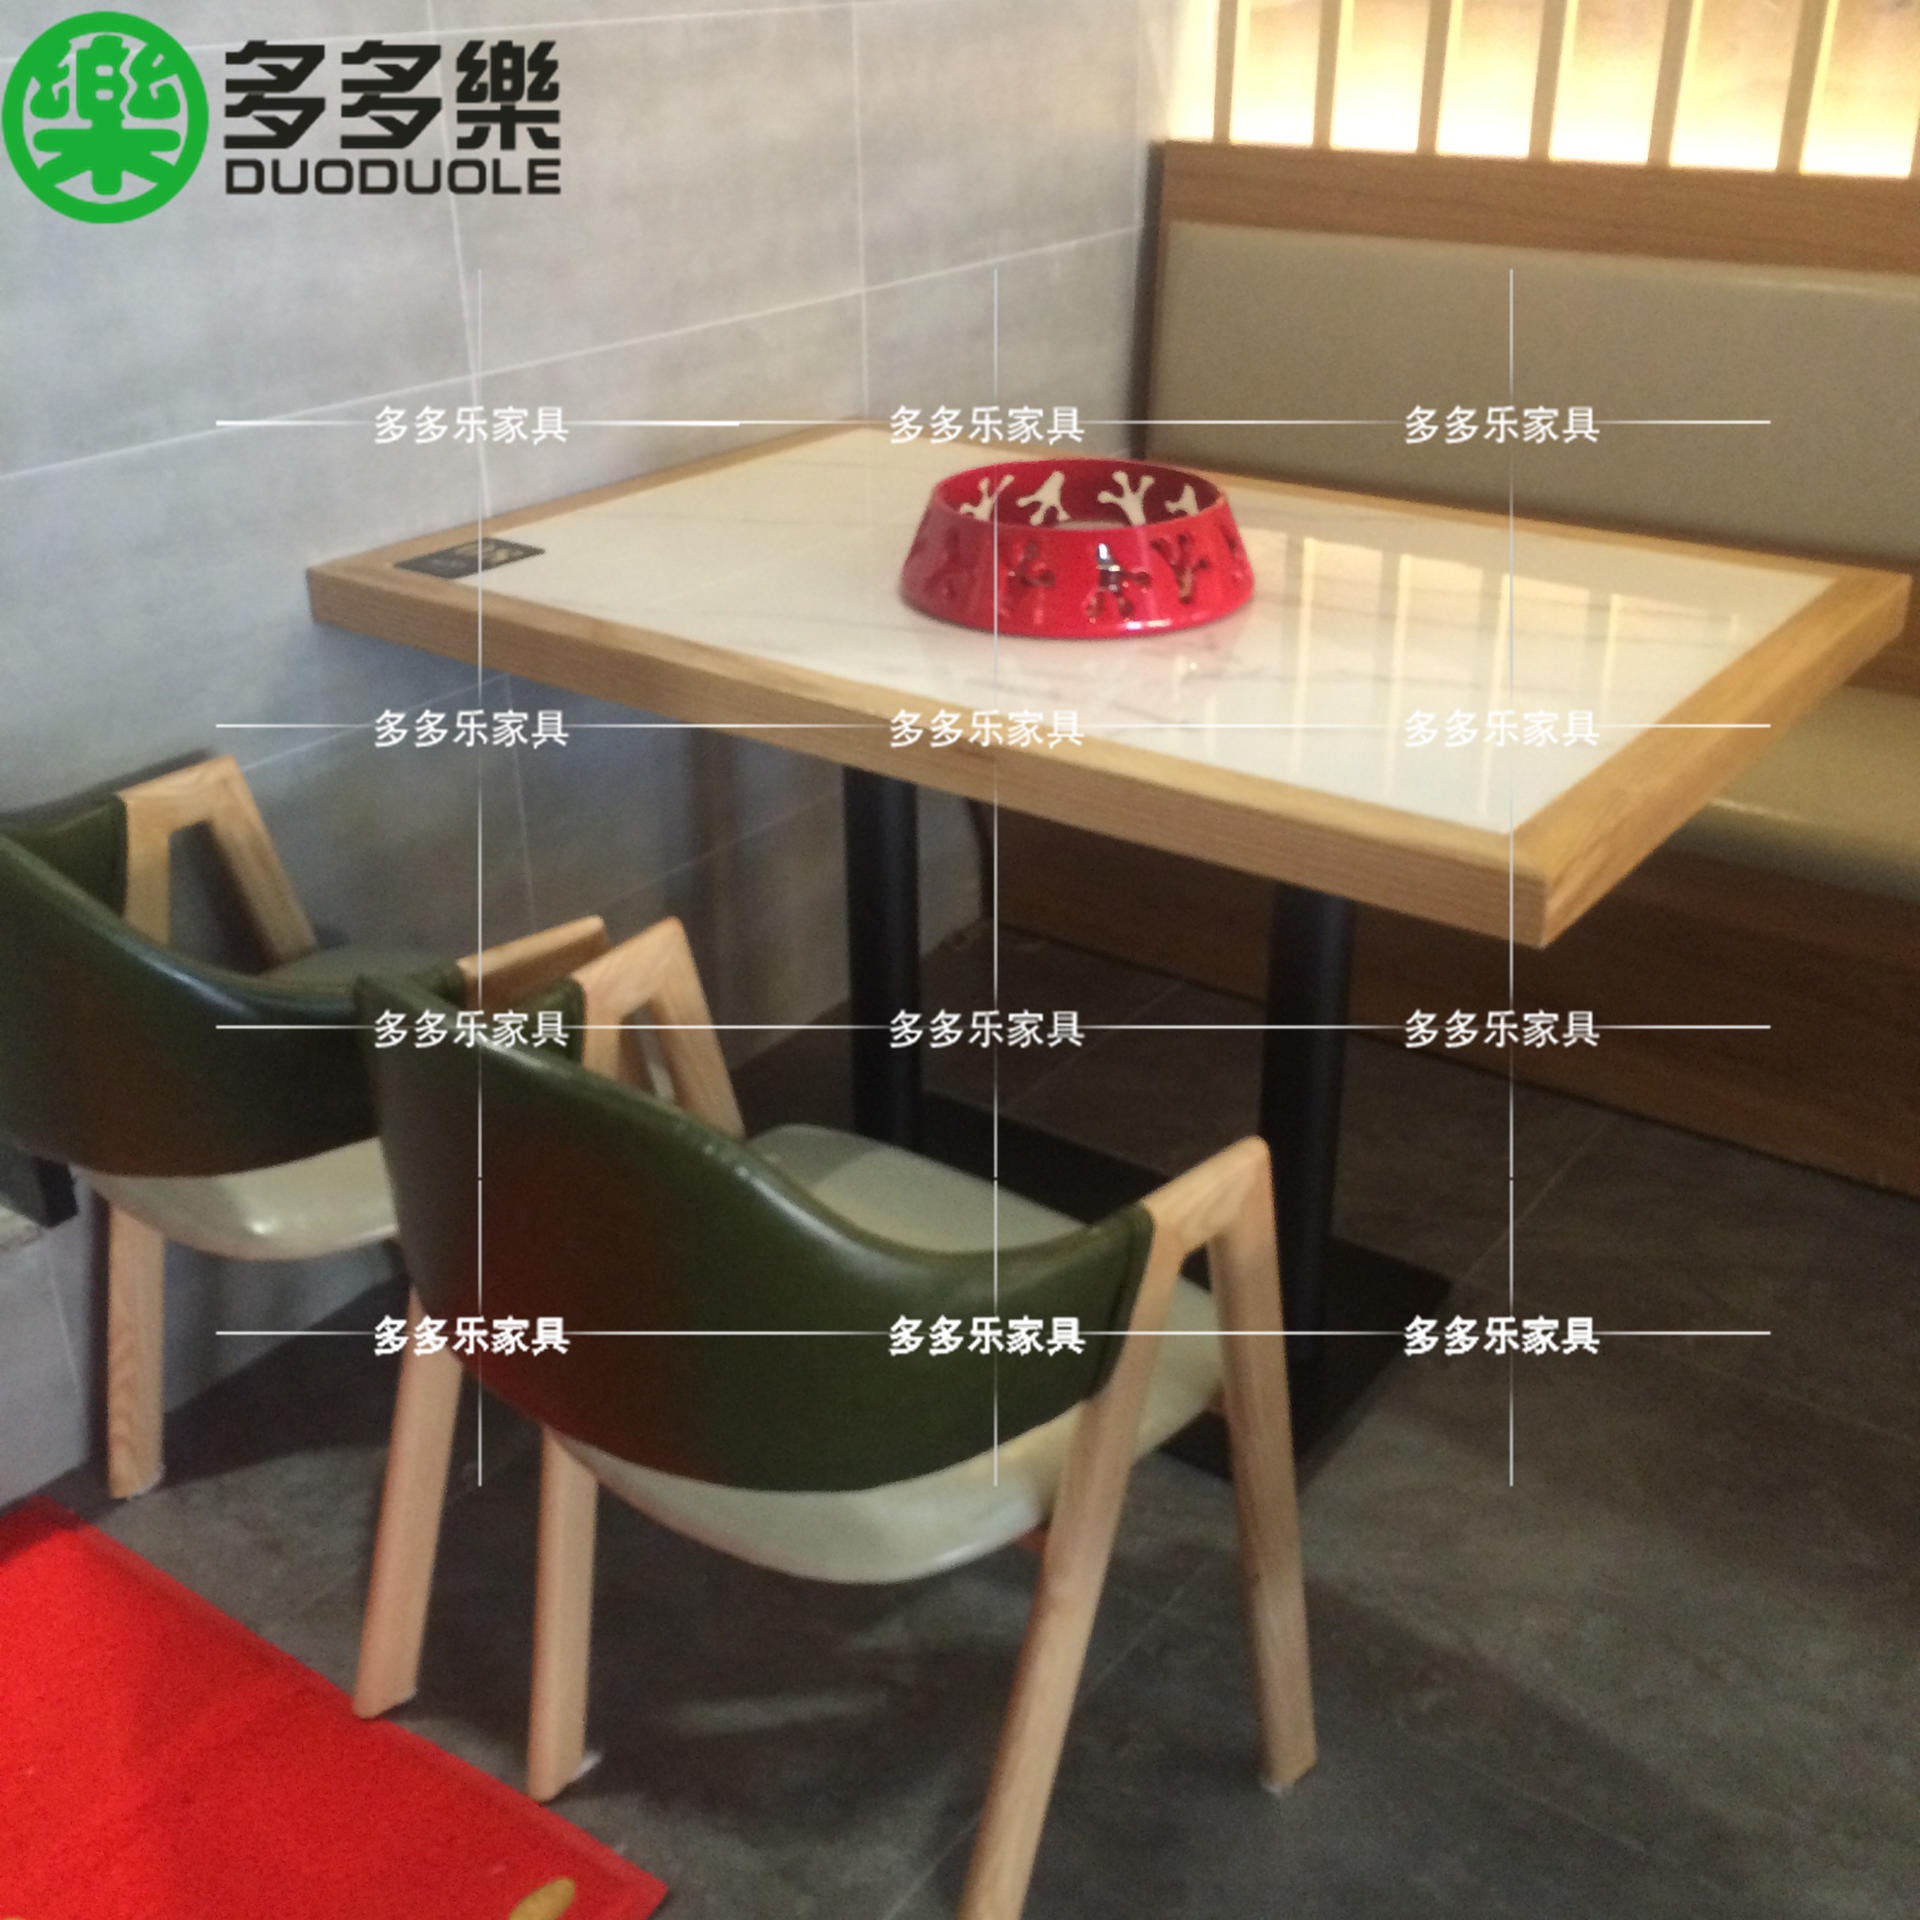 现代简约实木餐桌椅供应 新中式餐饮家具定做厂家